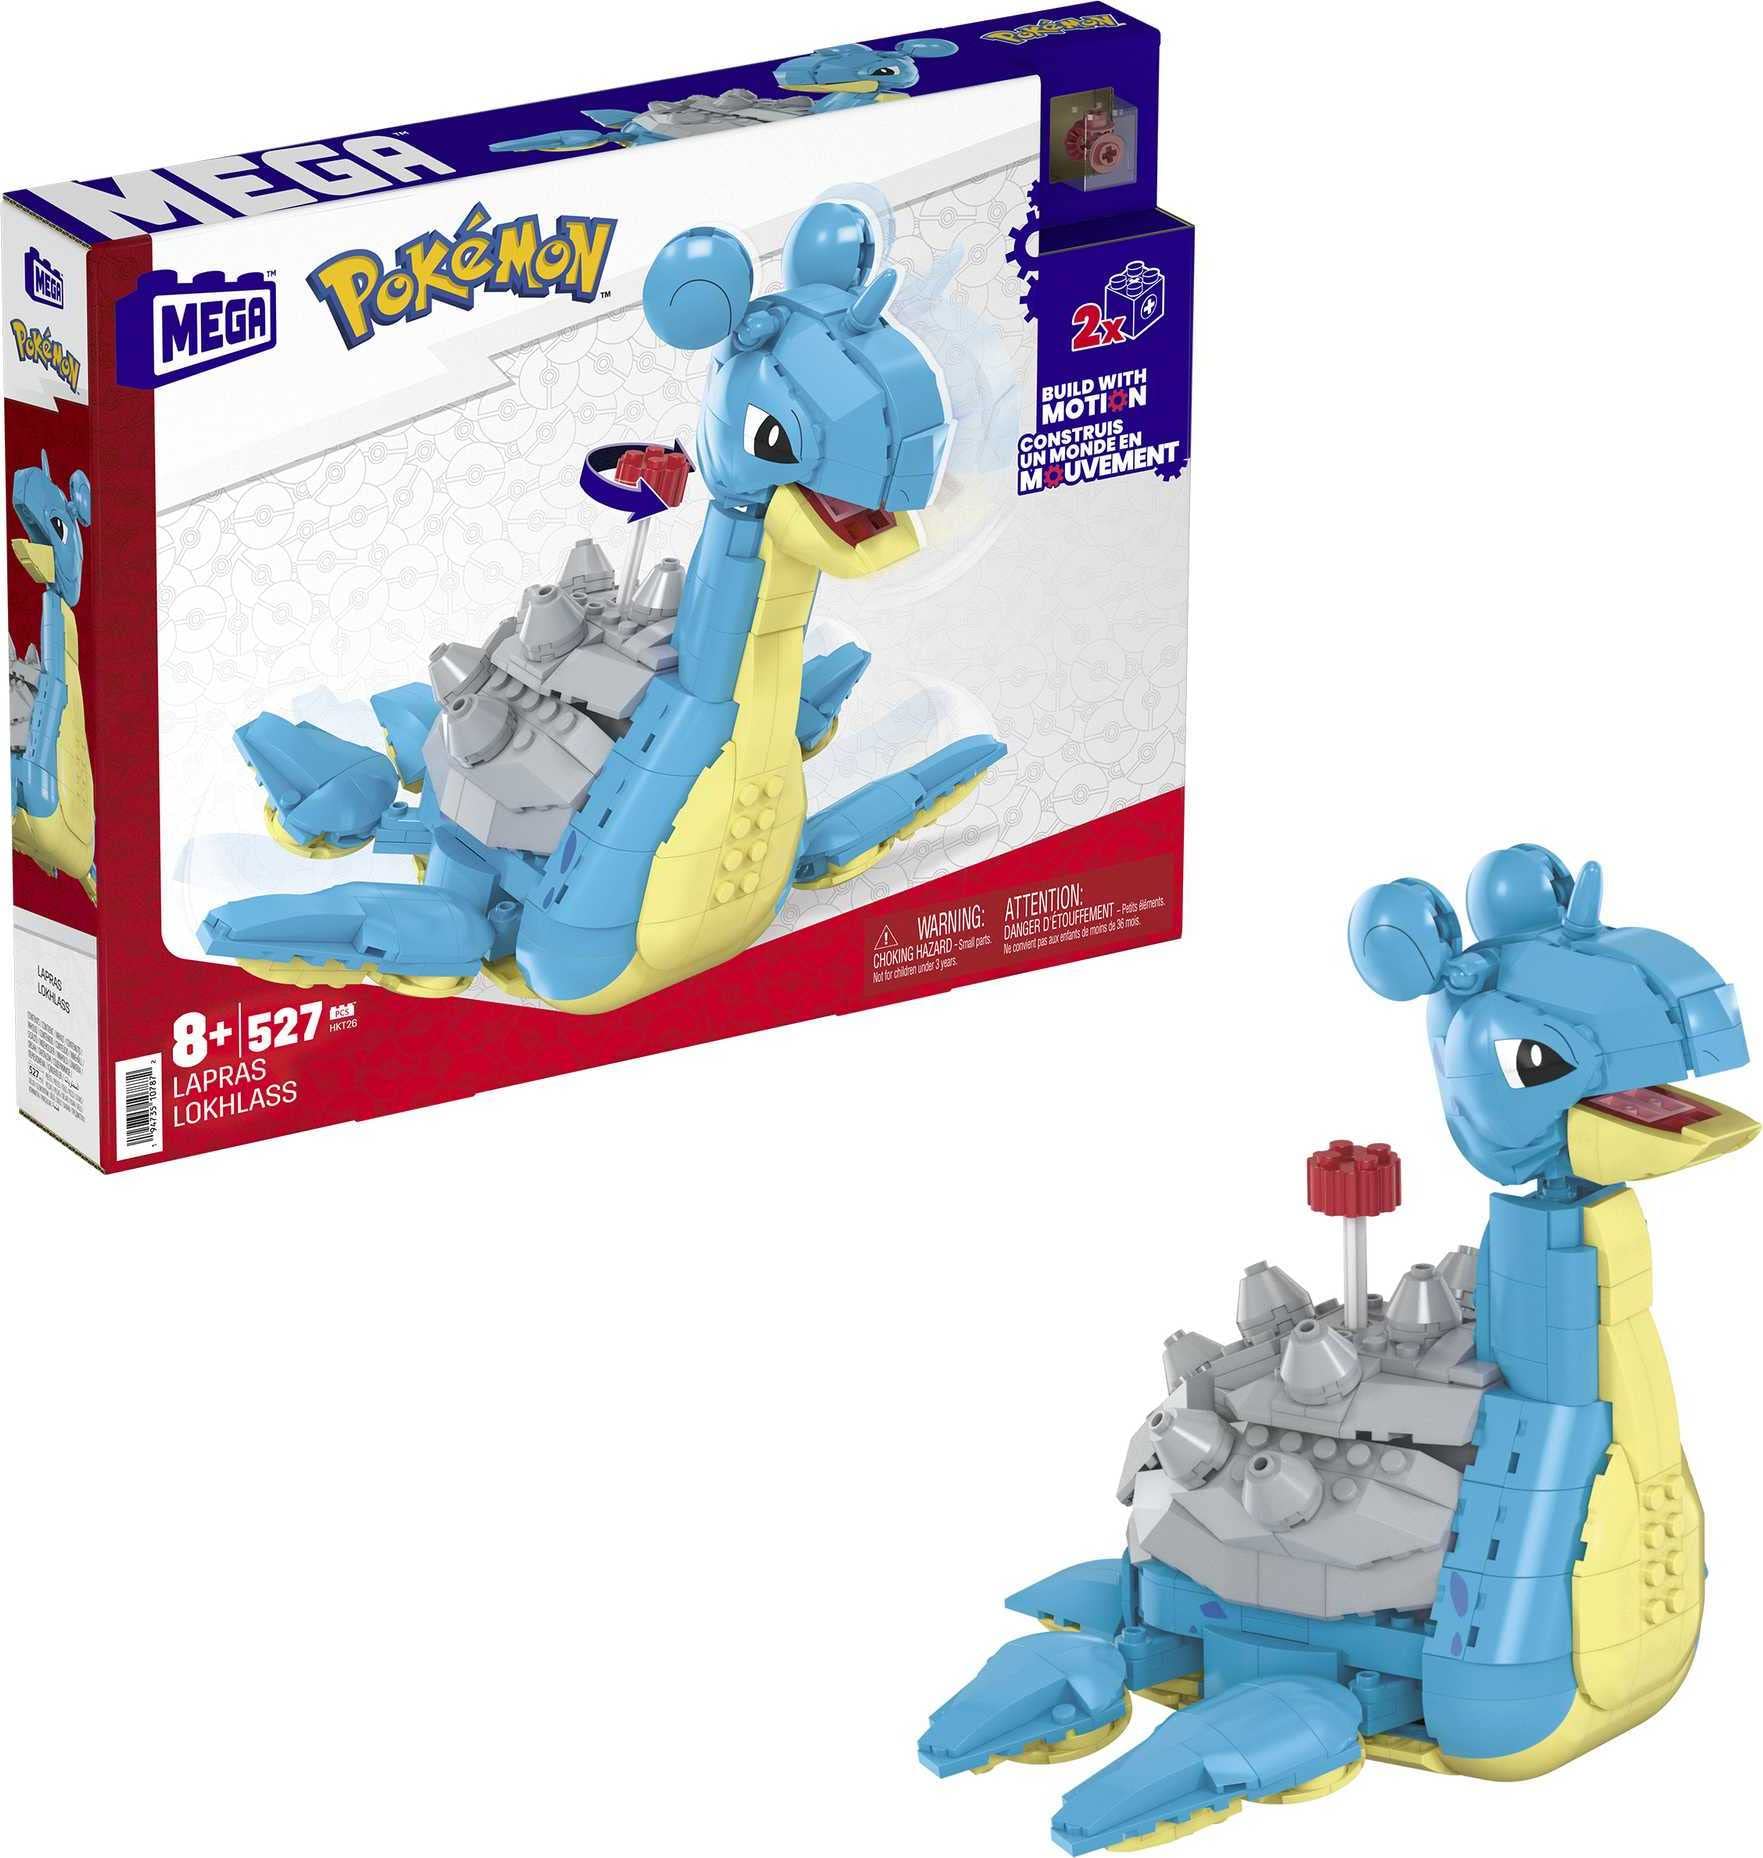 527-Piece Mega Pokémon Lapras Action Figure Building Toy Set for $19.99